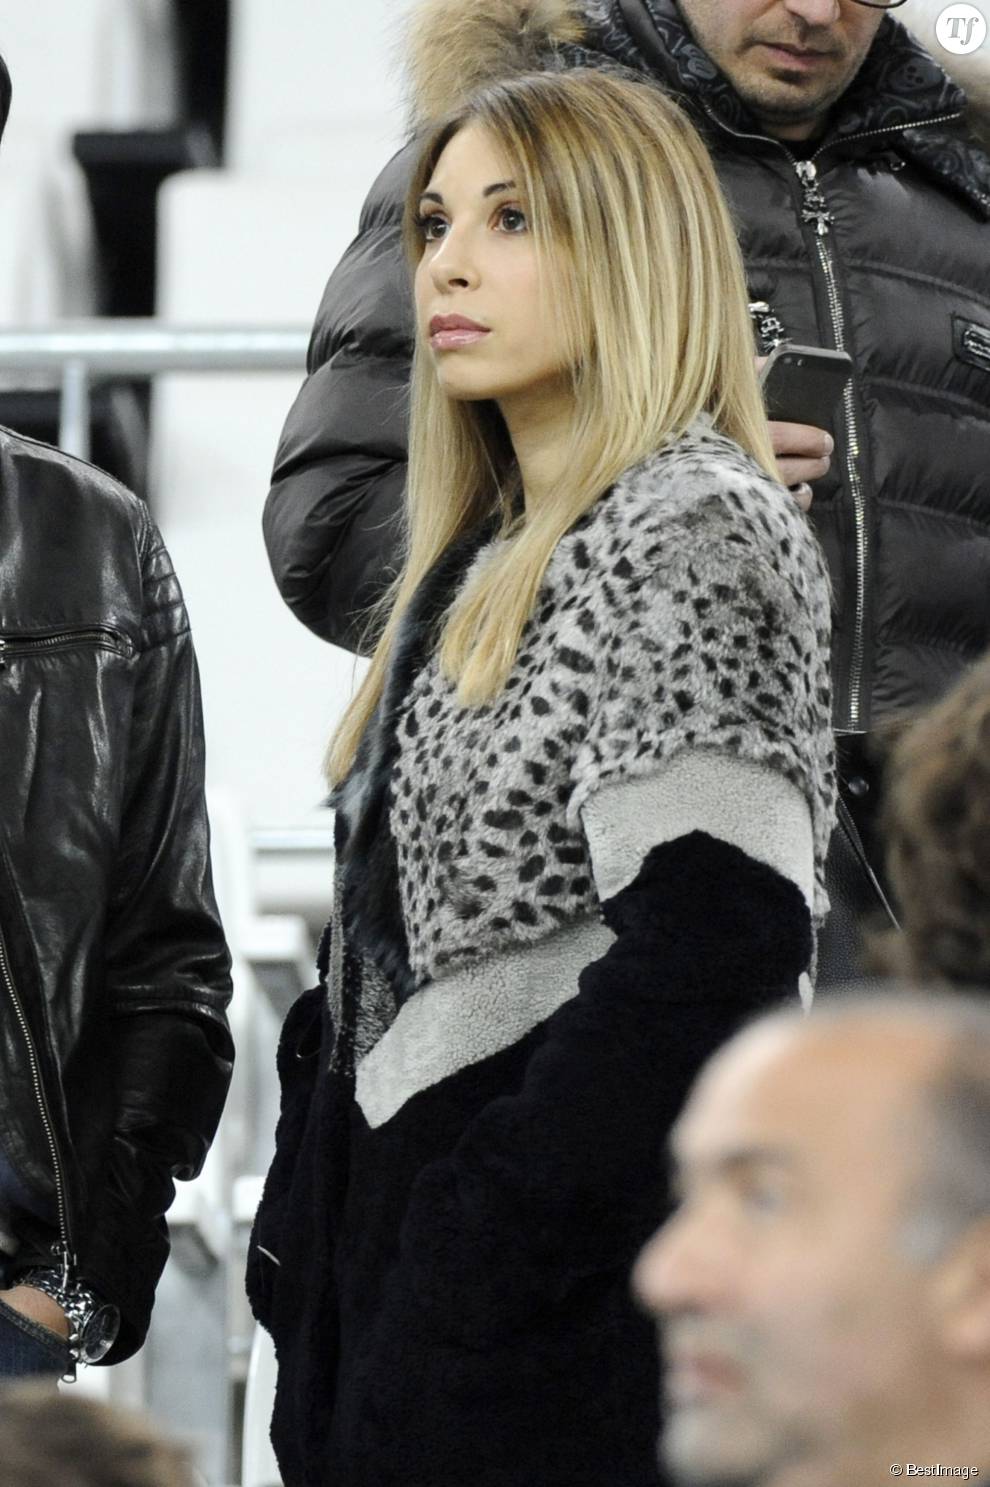   Fanny, la compagne de Mathieu Valbuena - People au match amical France-Suède au stade Vélodrome à Marseille, le 18 novembre 2014. 